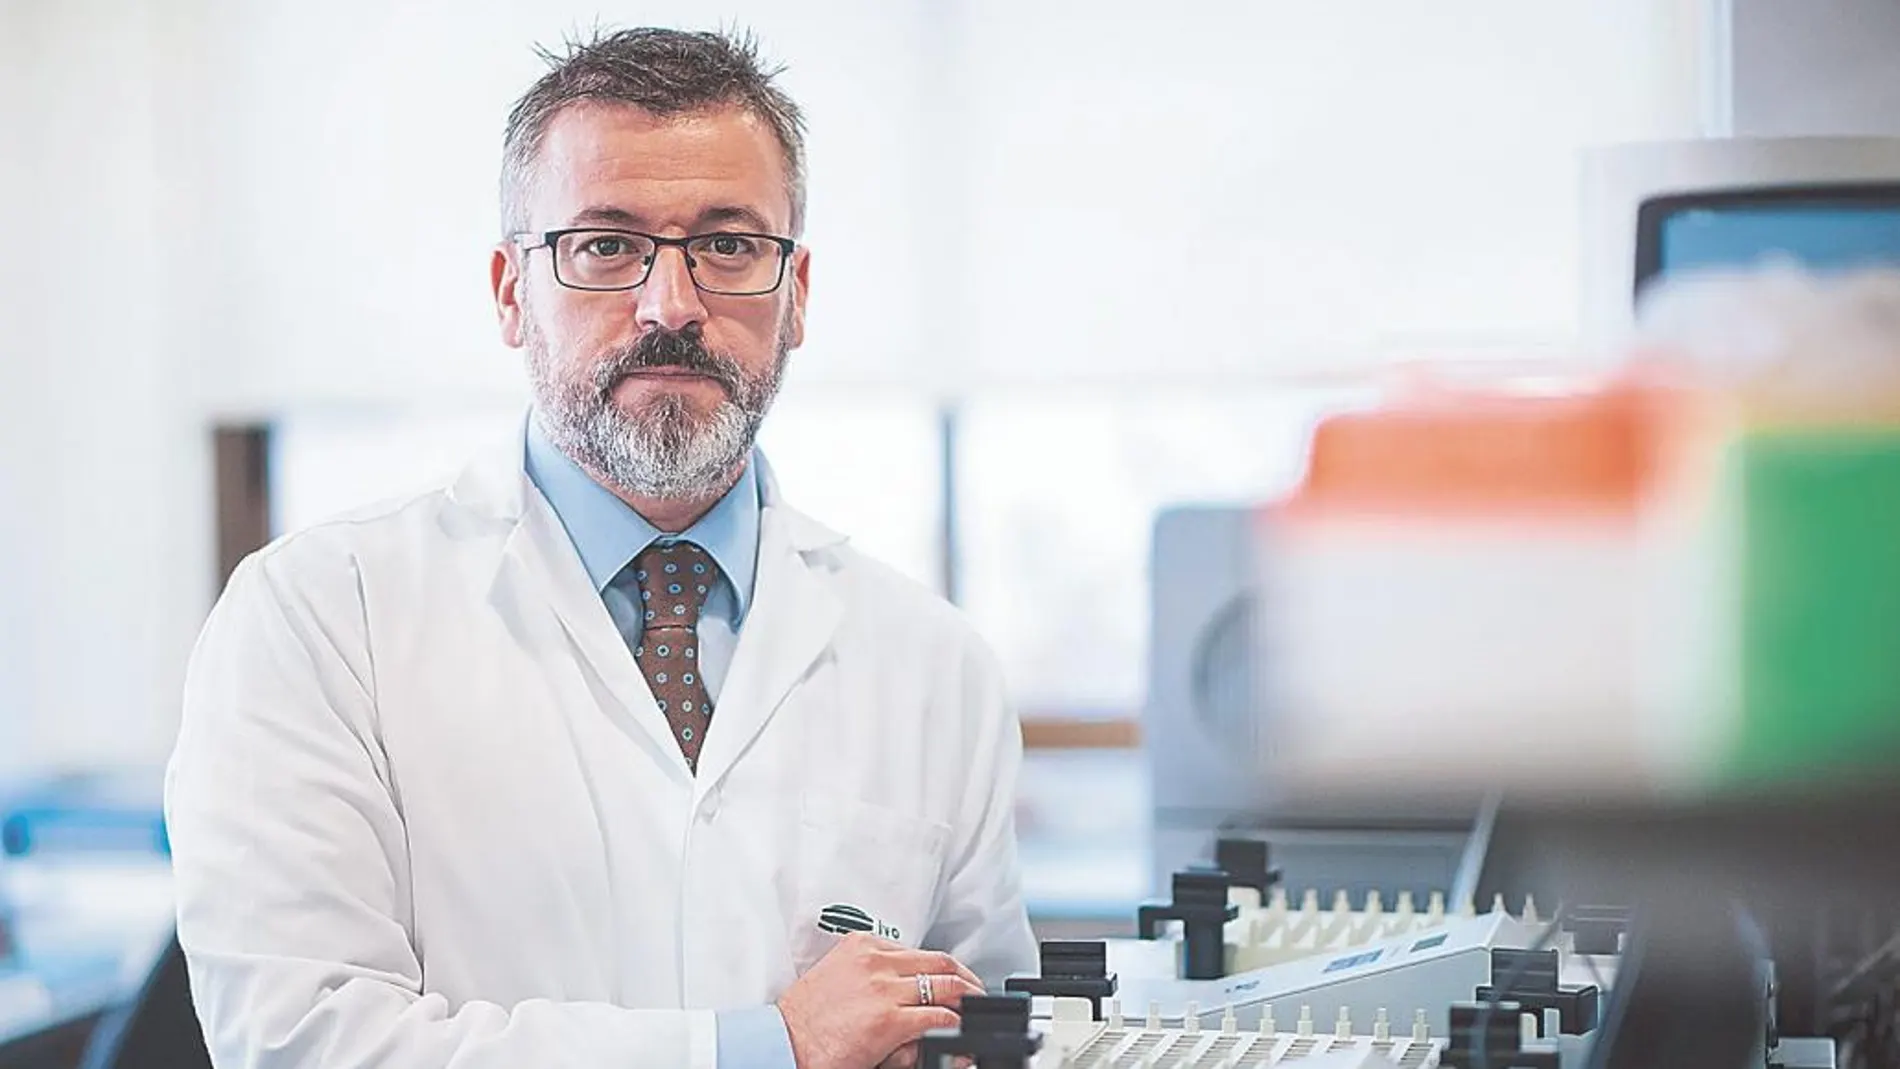 José A. López-Guerrero/ Jefe de Servicio del Laboratorio de Biología Molecular del Instituto Valenciano de Oncología (IVO), que ha desarrollado diversos proyectos en cáncer de mama, riñón, próstata y tumores de huesos y partes blandas.